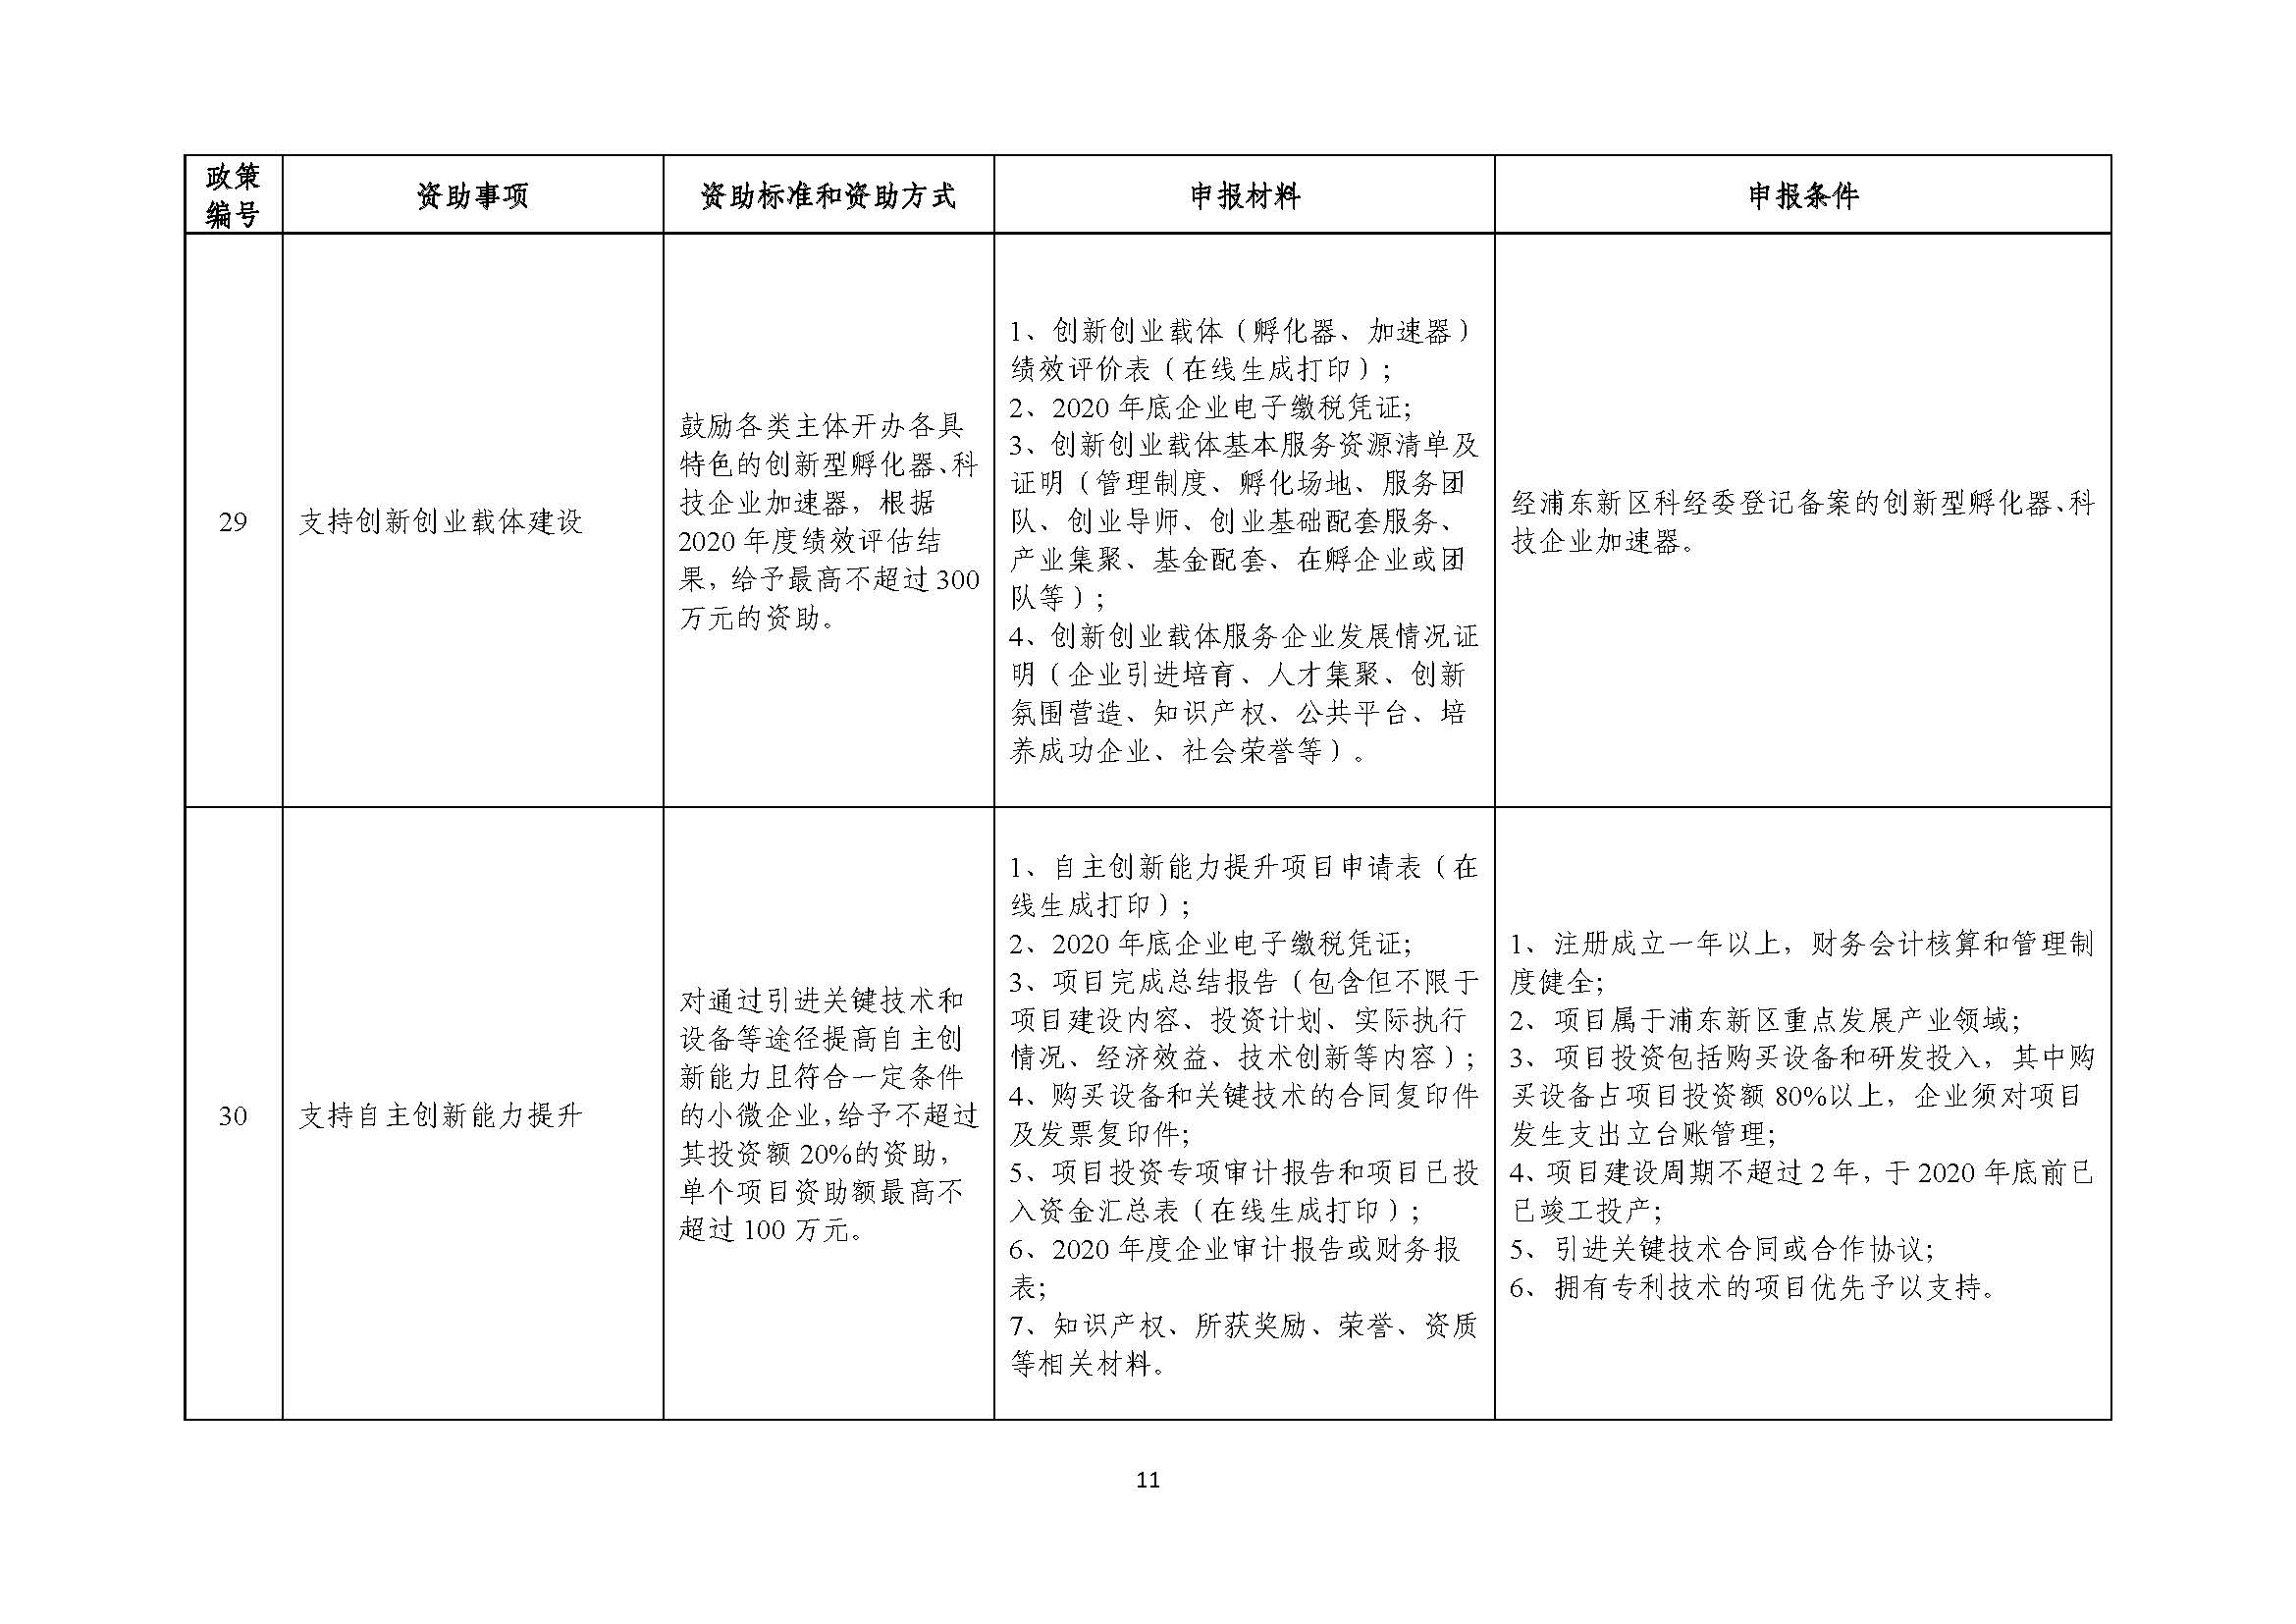 2021年张江科学城专项政策申报指南_页面_11.jpg